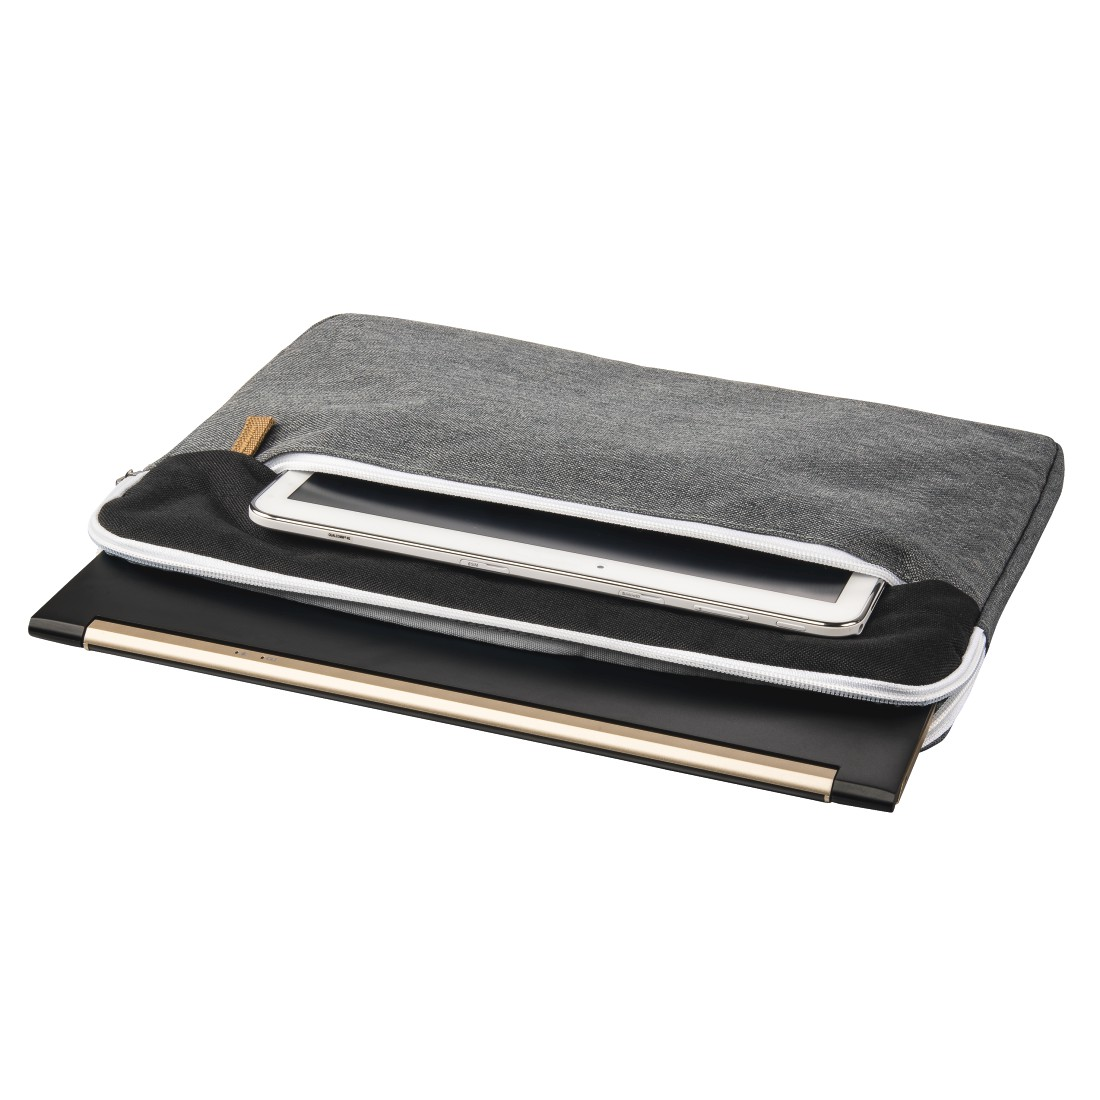 HAMA Florenz für Schwarz/Grau Polyester, Zoll Universal 13.3 Notebooktasche Sleeve